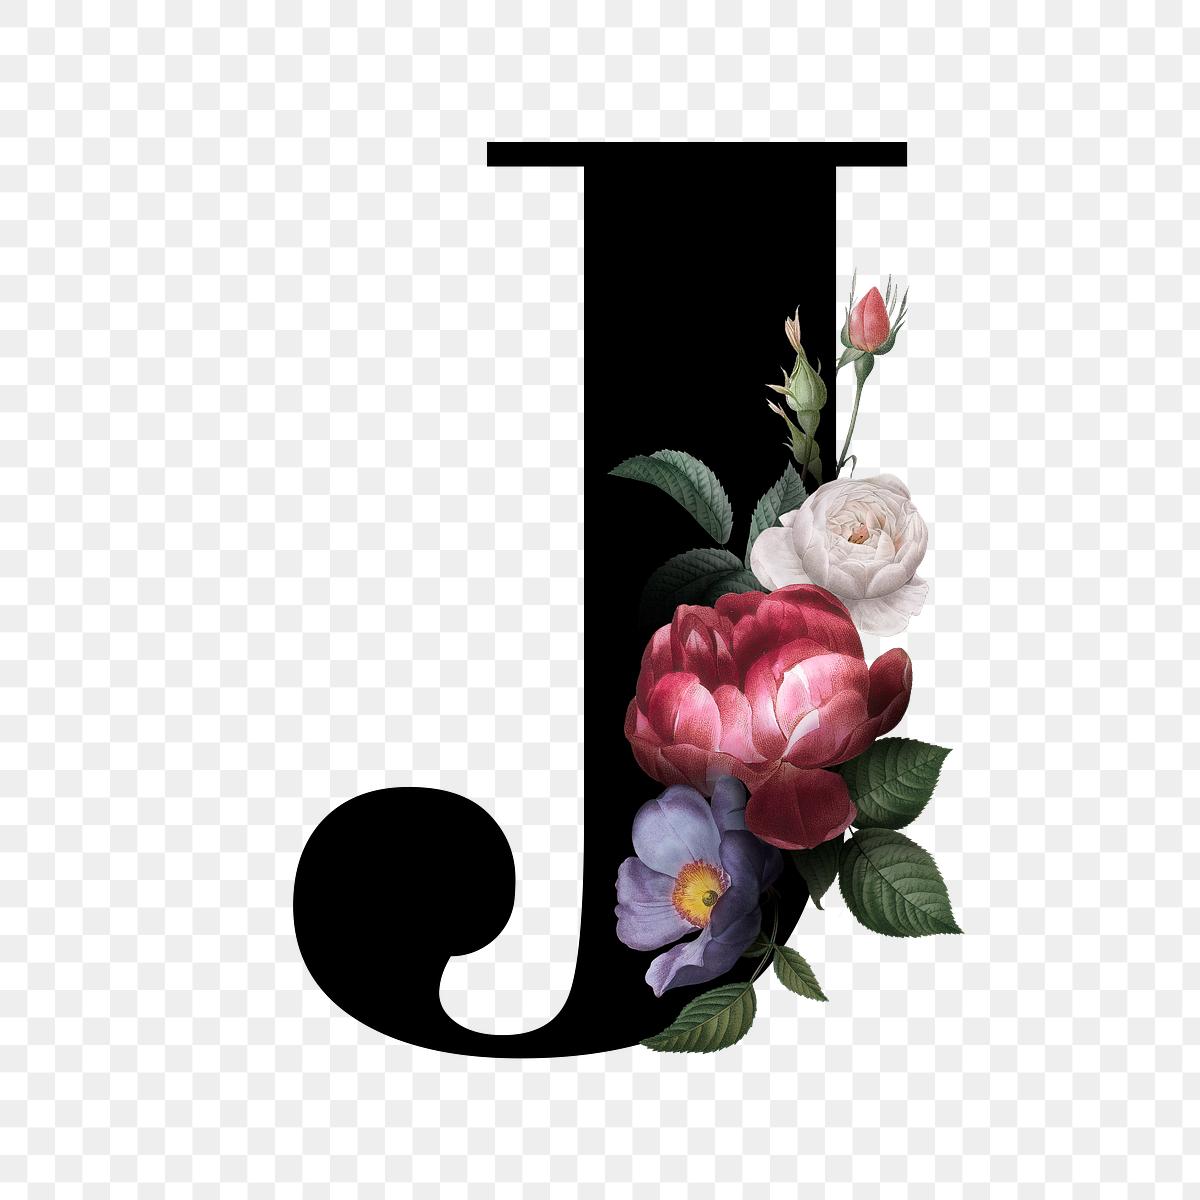 Floral letter J  font Free stock illustration 583179